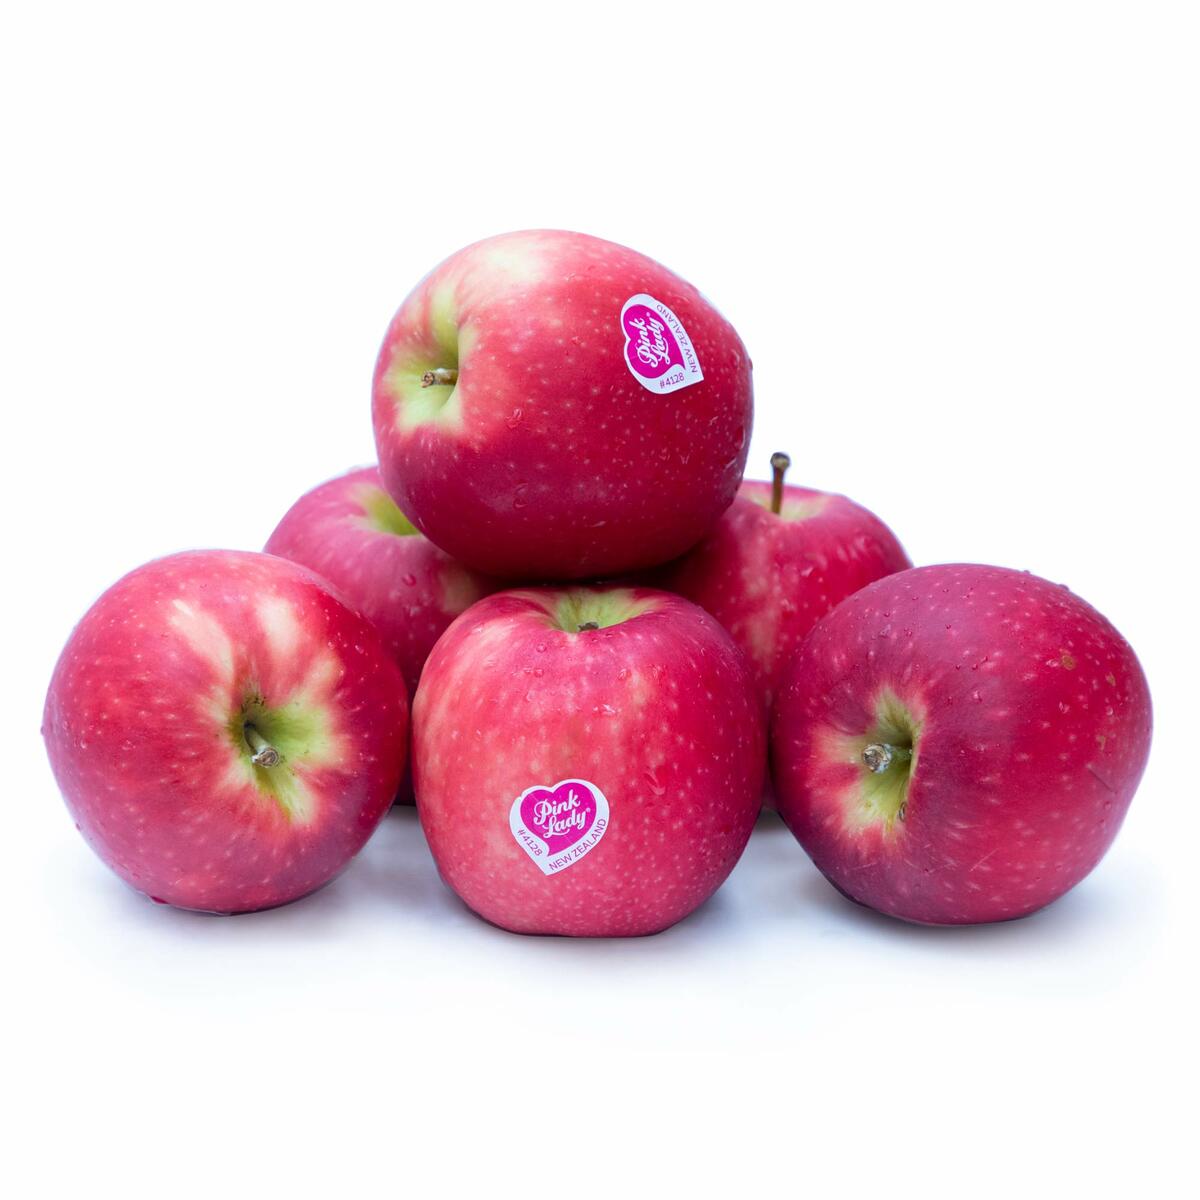 Buy Apple Pink Lady 6pcs Online - Lulu Hypermarket Oman